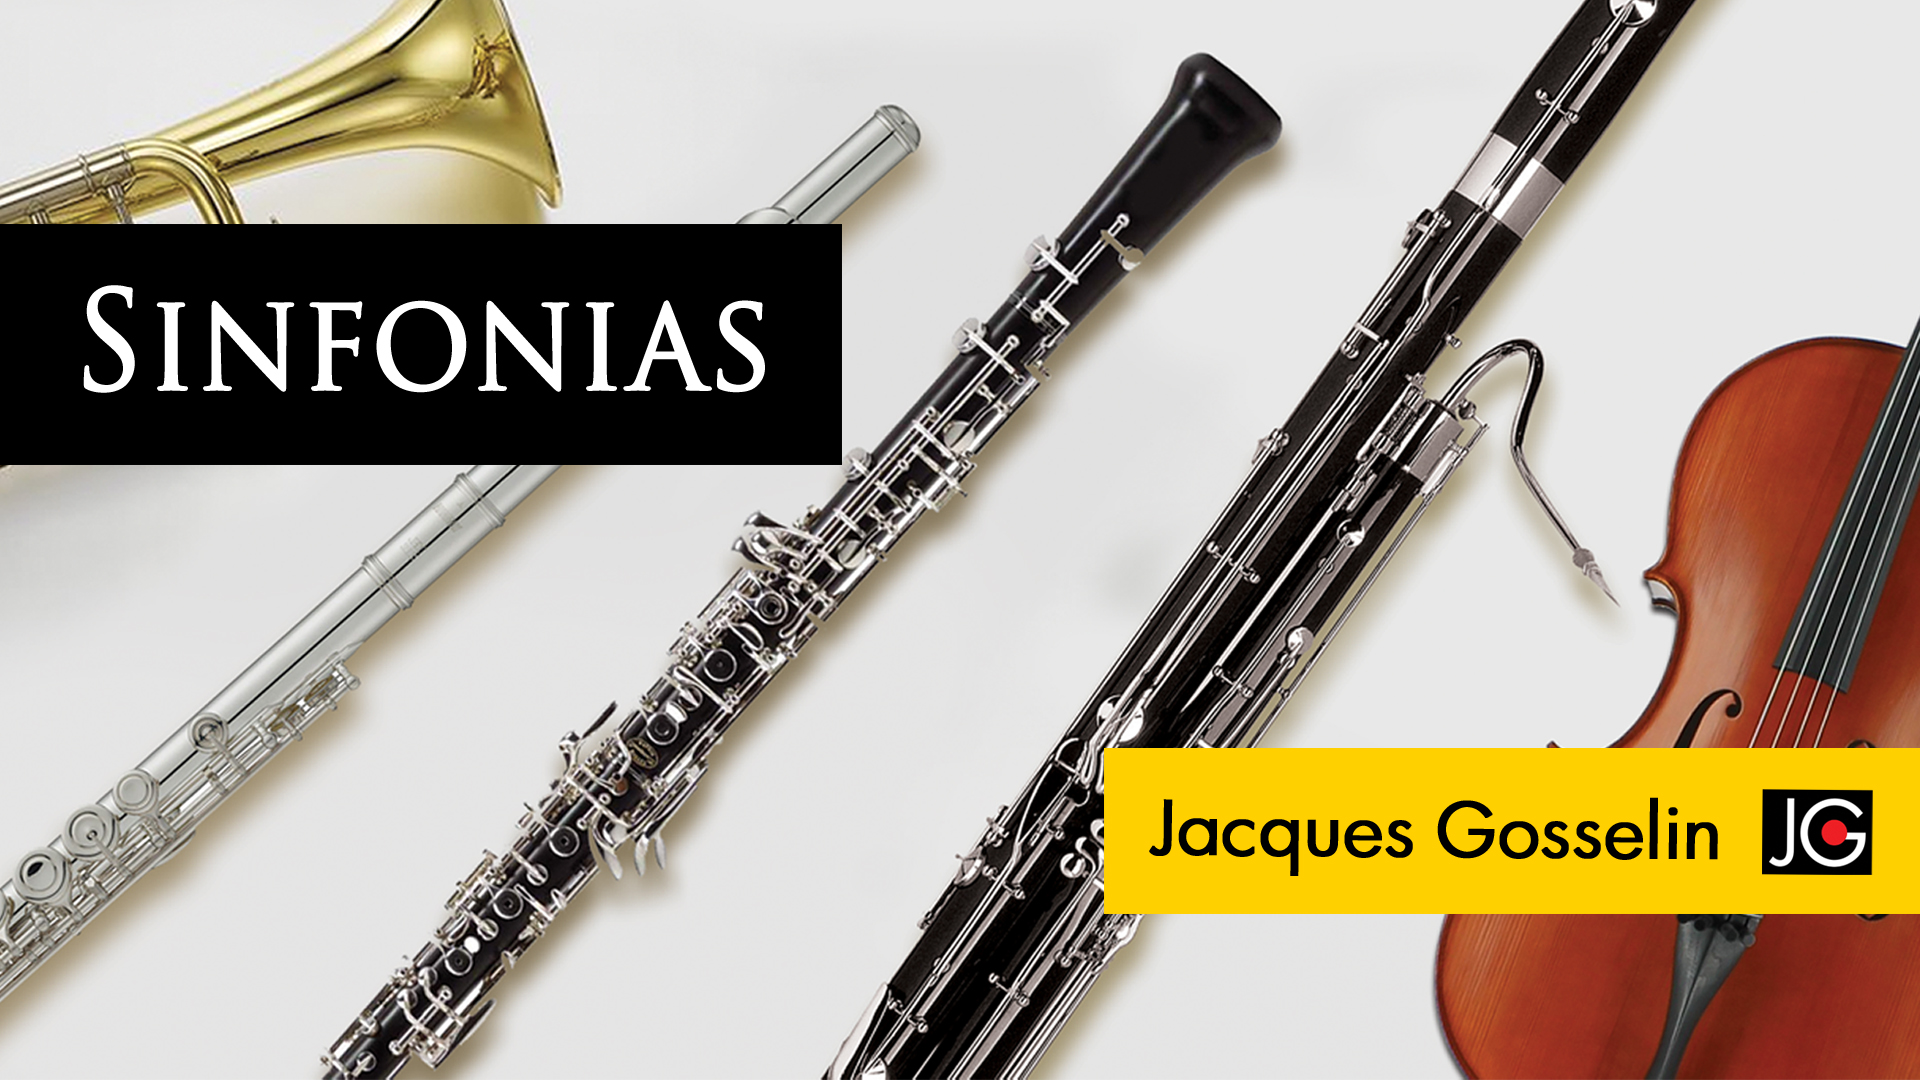 Album Sinfonias de Jacques Gosselin